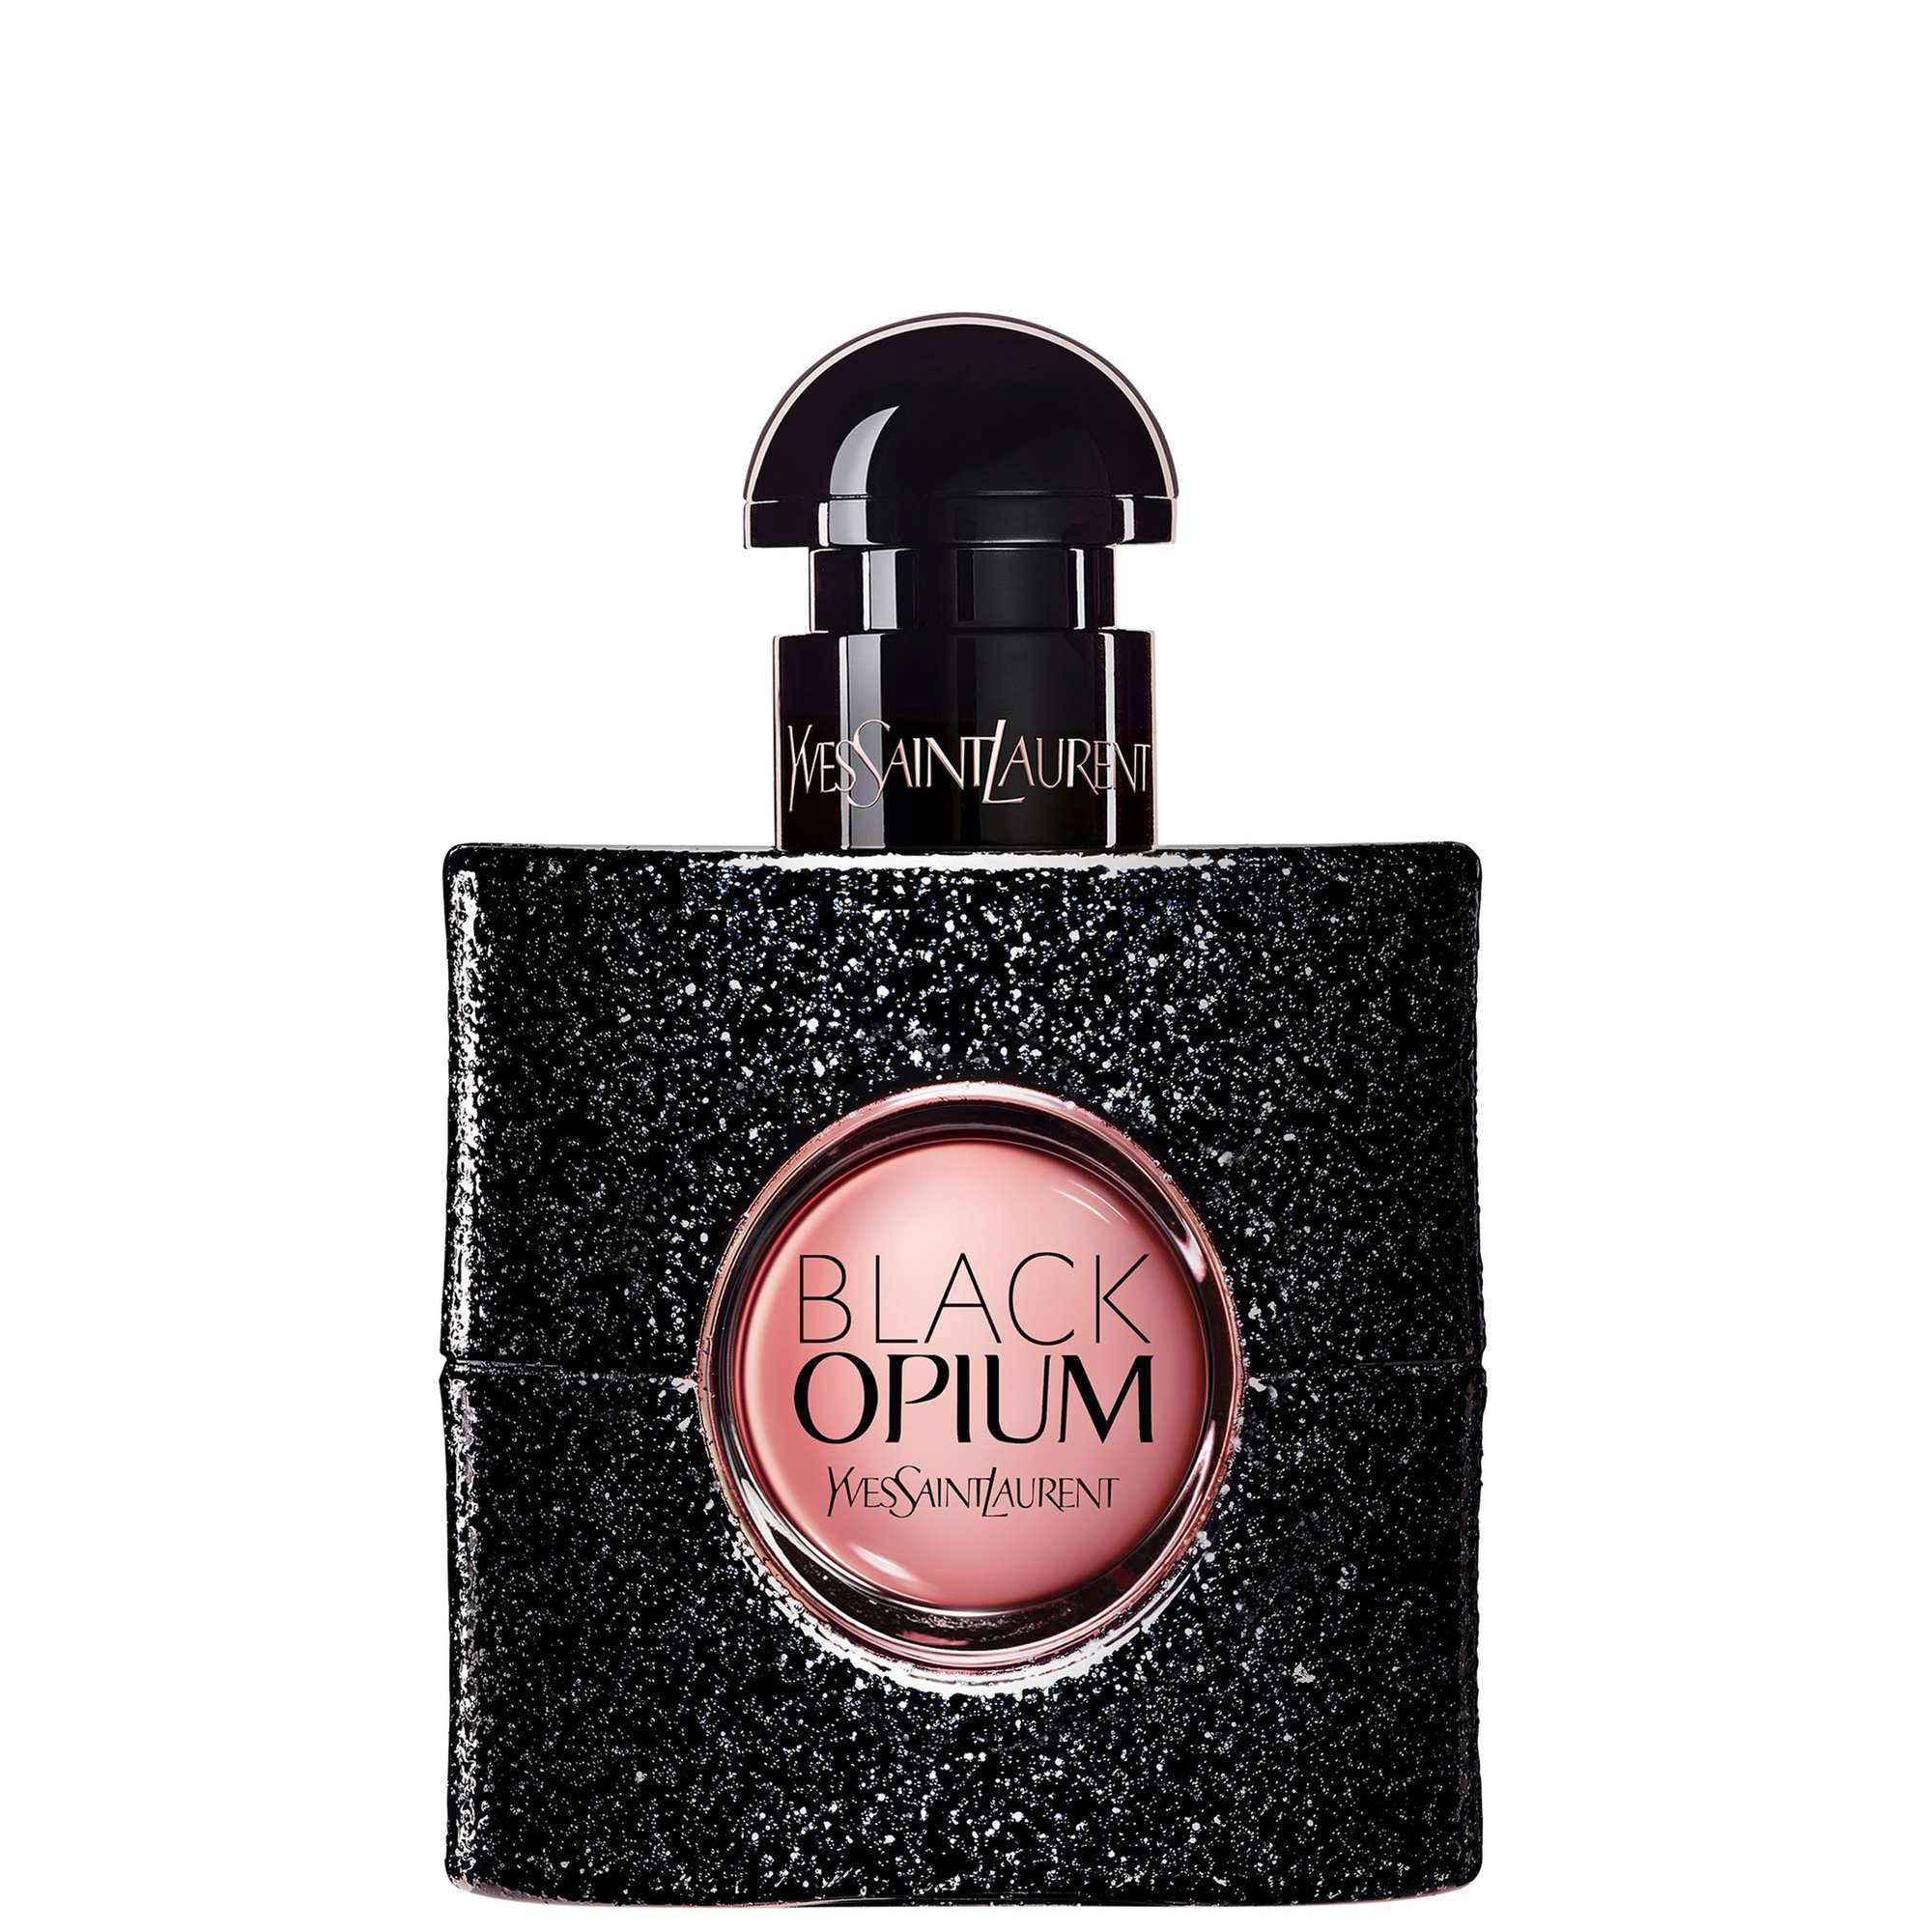 Photos - Women's Fragrance Yves Saint Laurent Black Opium Eau de Parfum Spray 30ml 